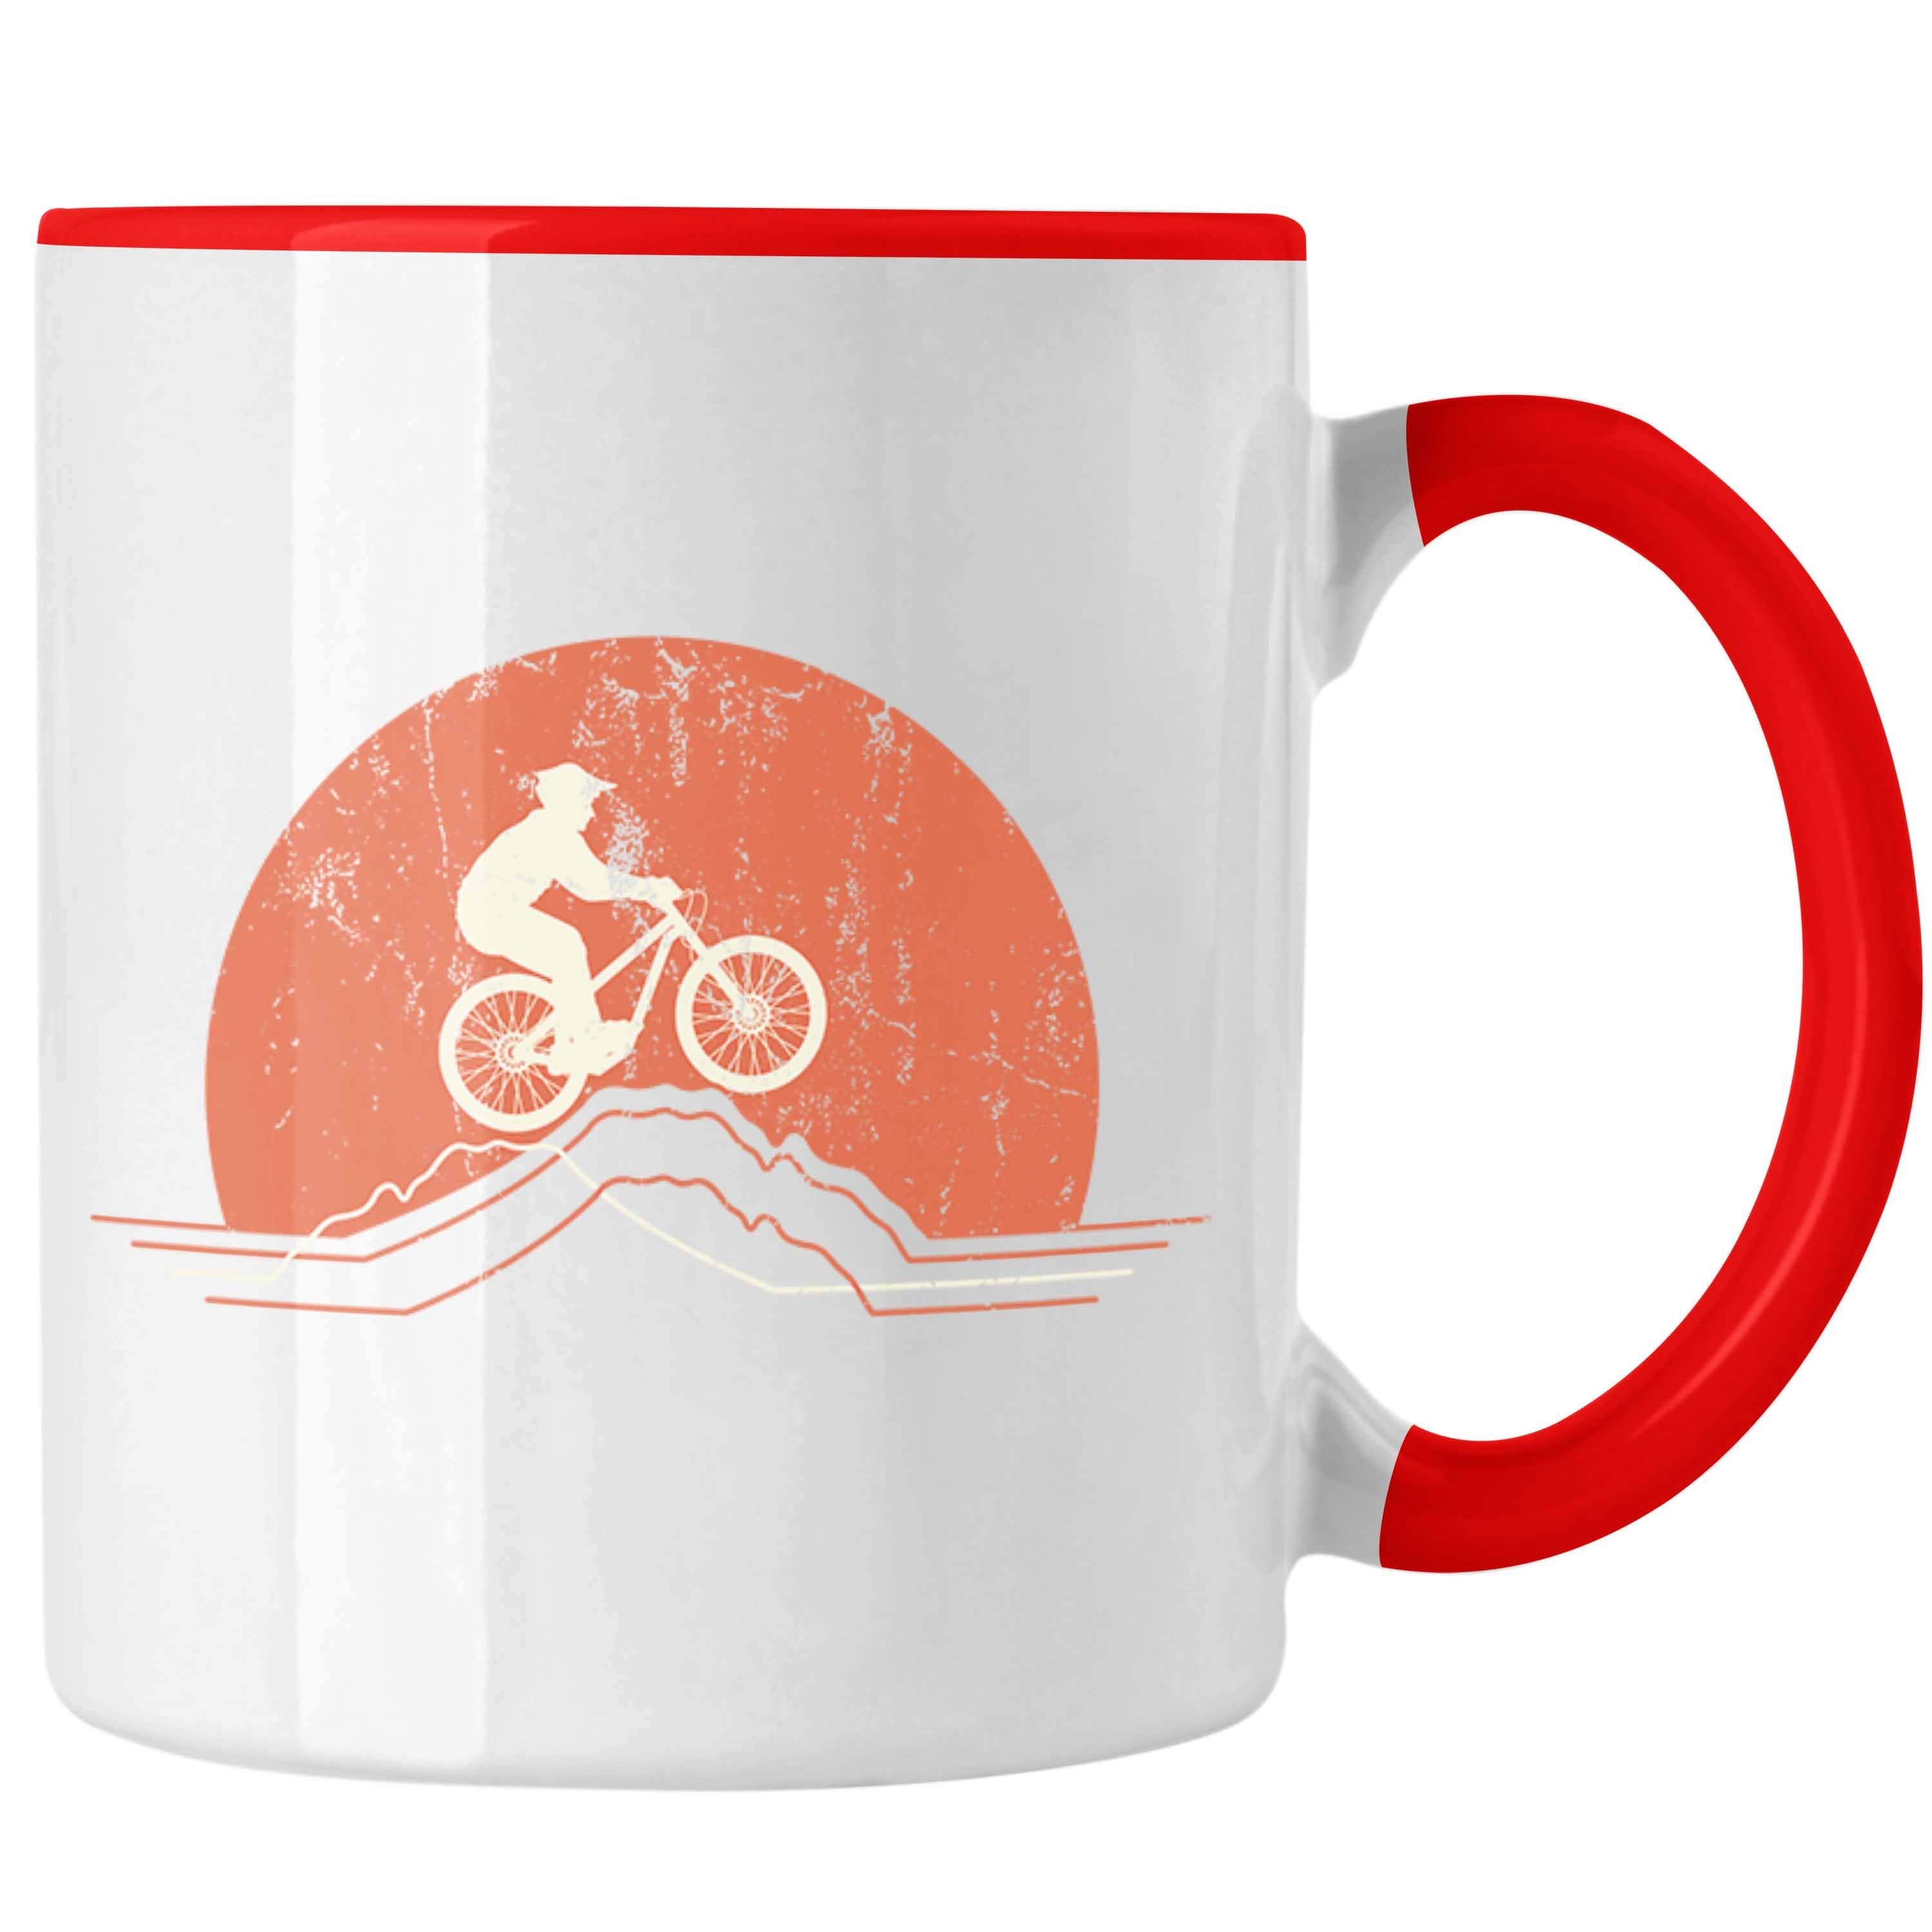 Männer Grafik Tasse MTB Trendation Kinder Kaffeetasse Geschenk Geschenkidee Trendation - Moutainbike Mountainbiker Accessories Tasse Rot Berge